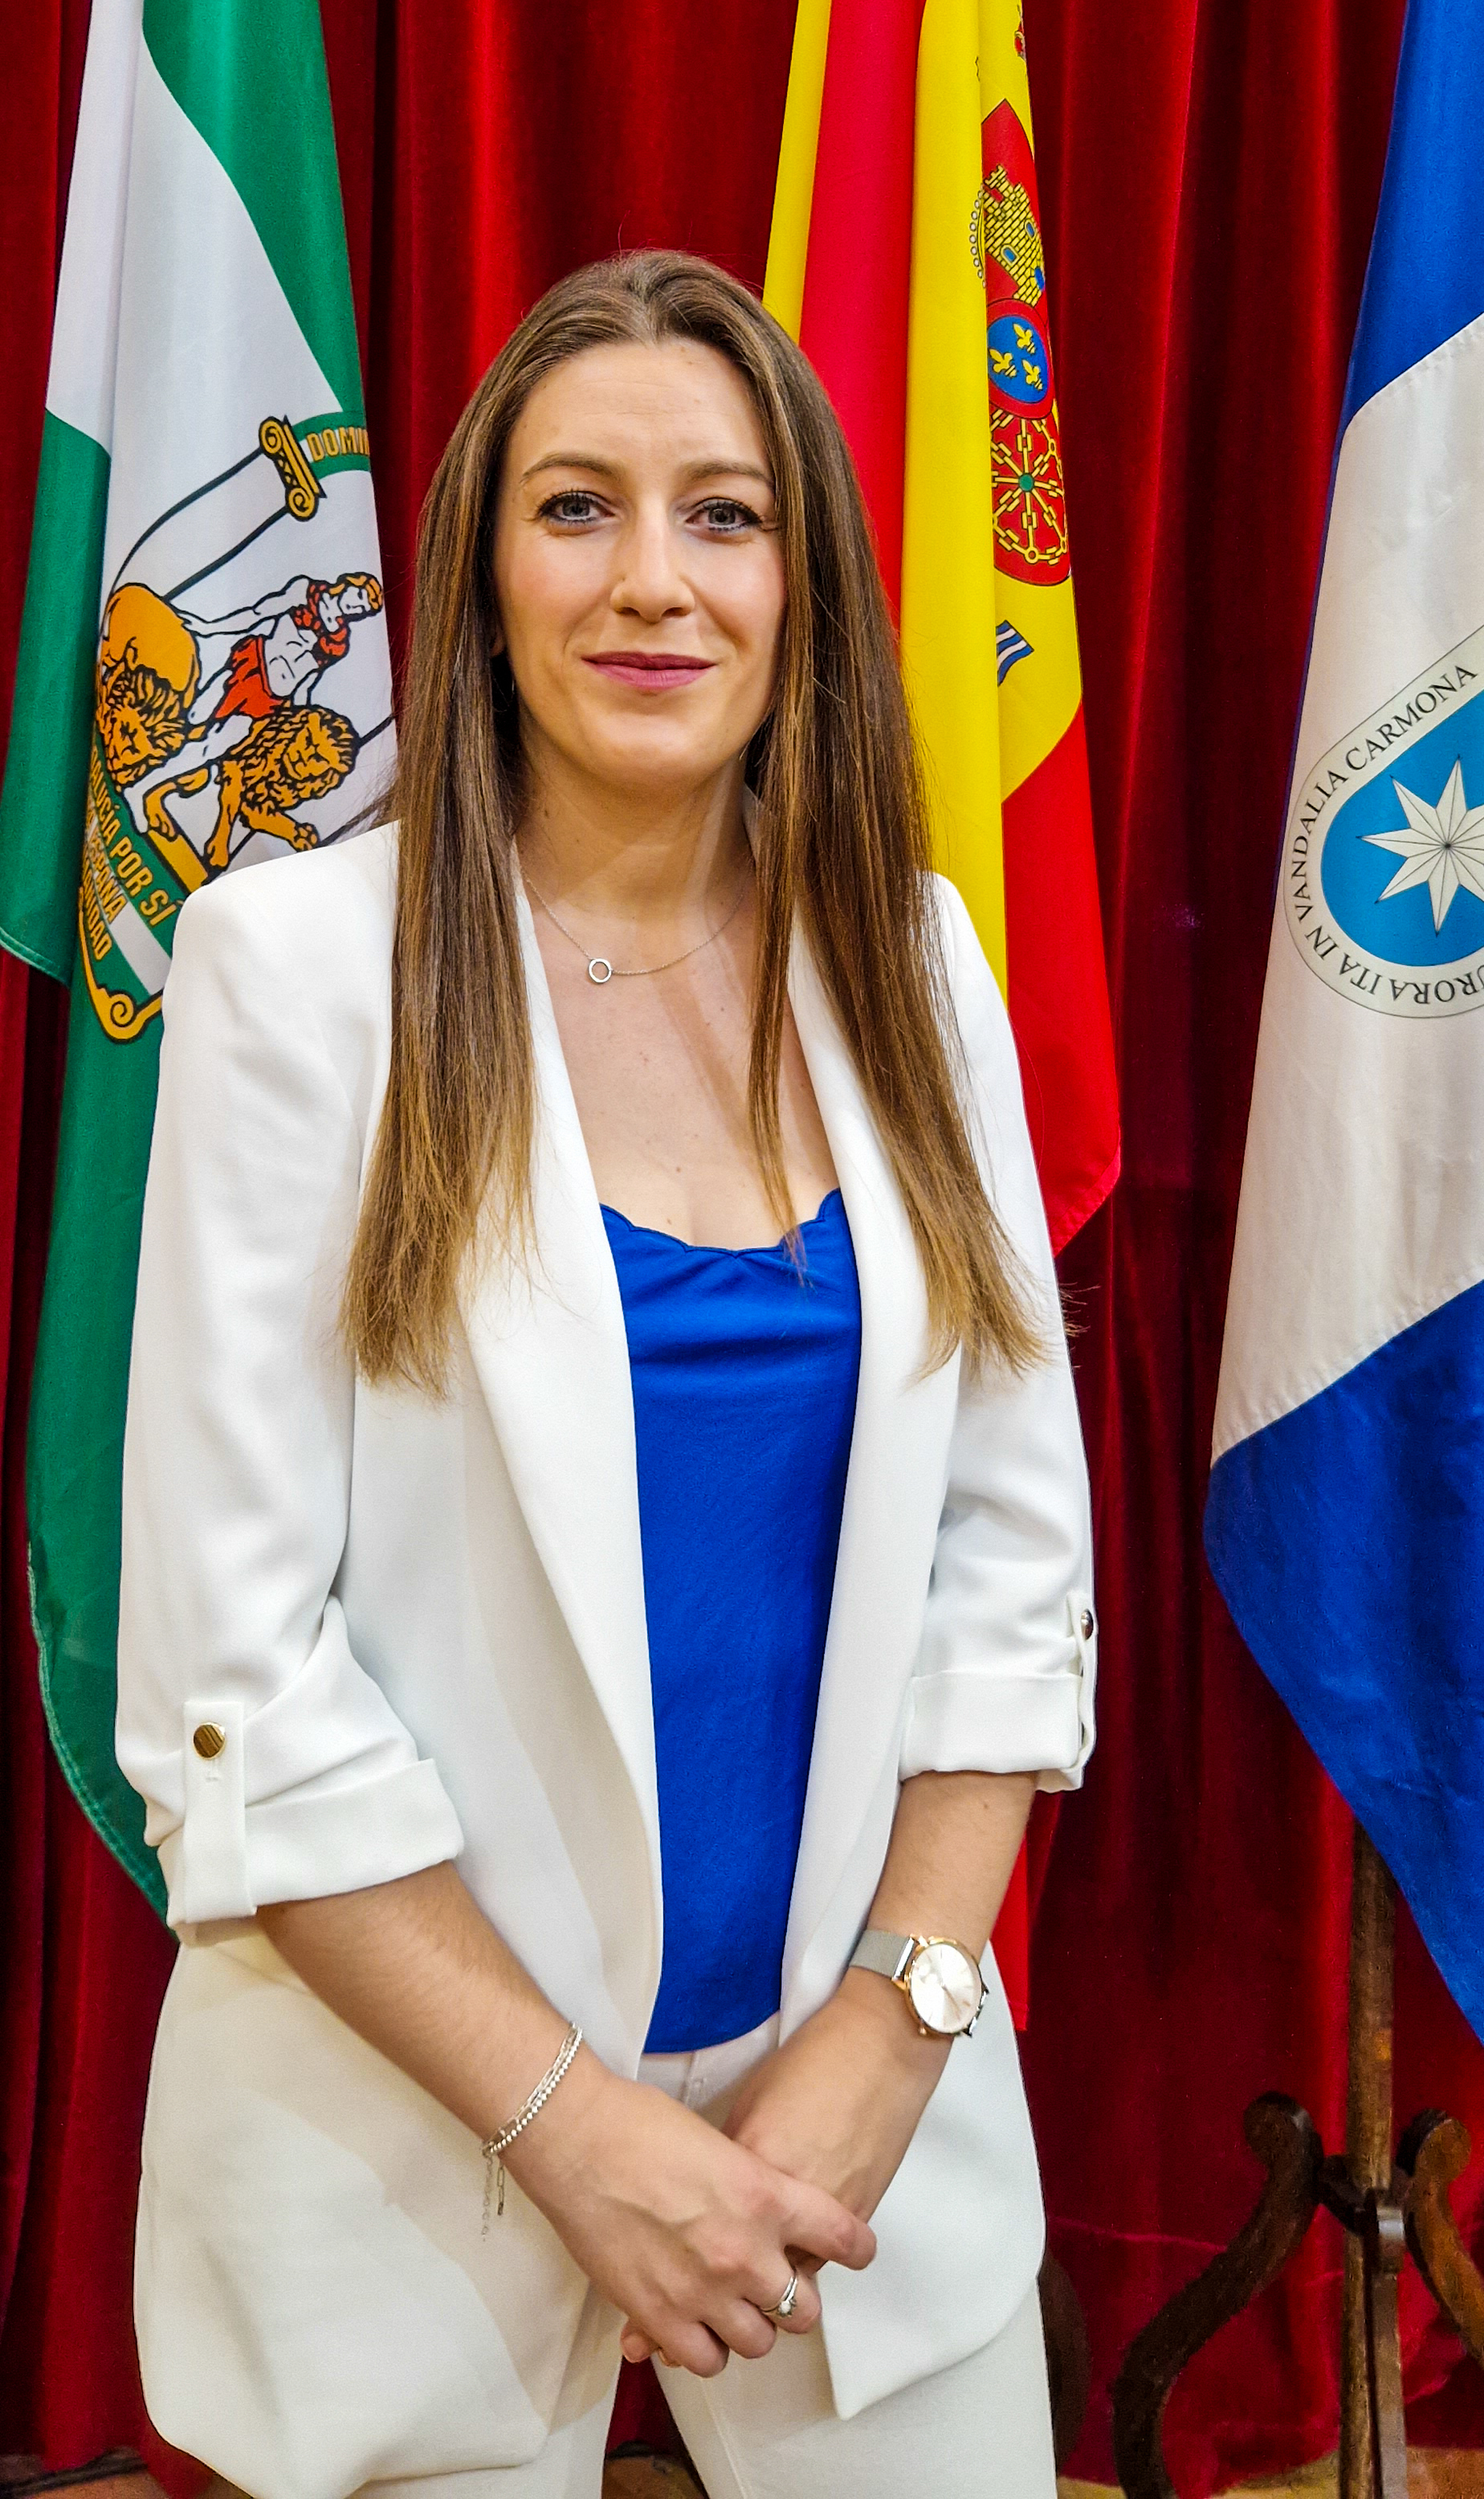 Dña. Maria Cheresade
López Vázquez